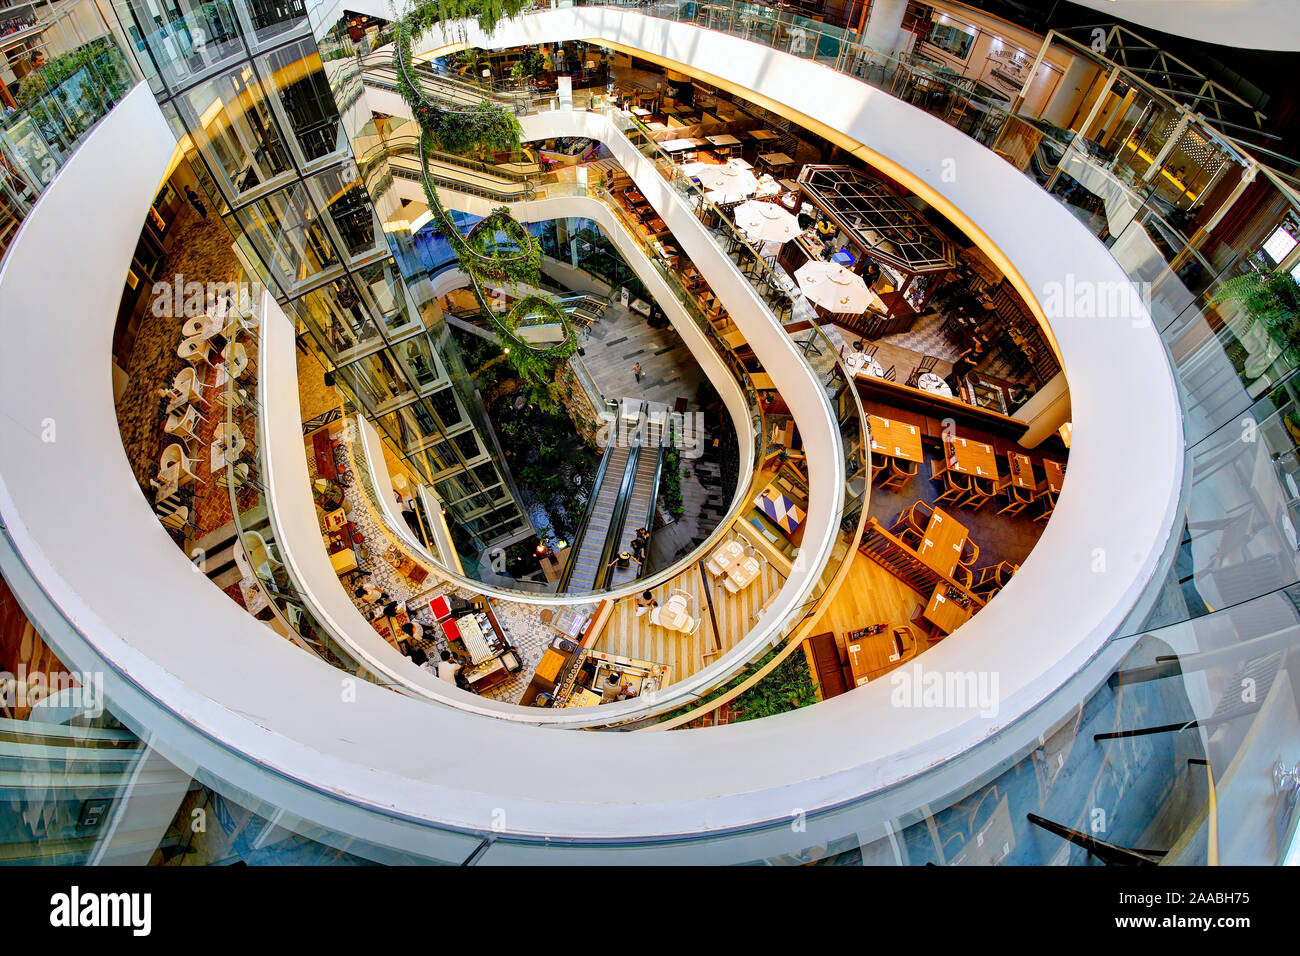 Louis Vuitton shop, Emporium shopping mall, Bangkok, Thailand Stock Photo -  Alamy